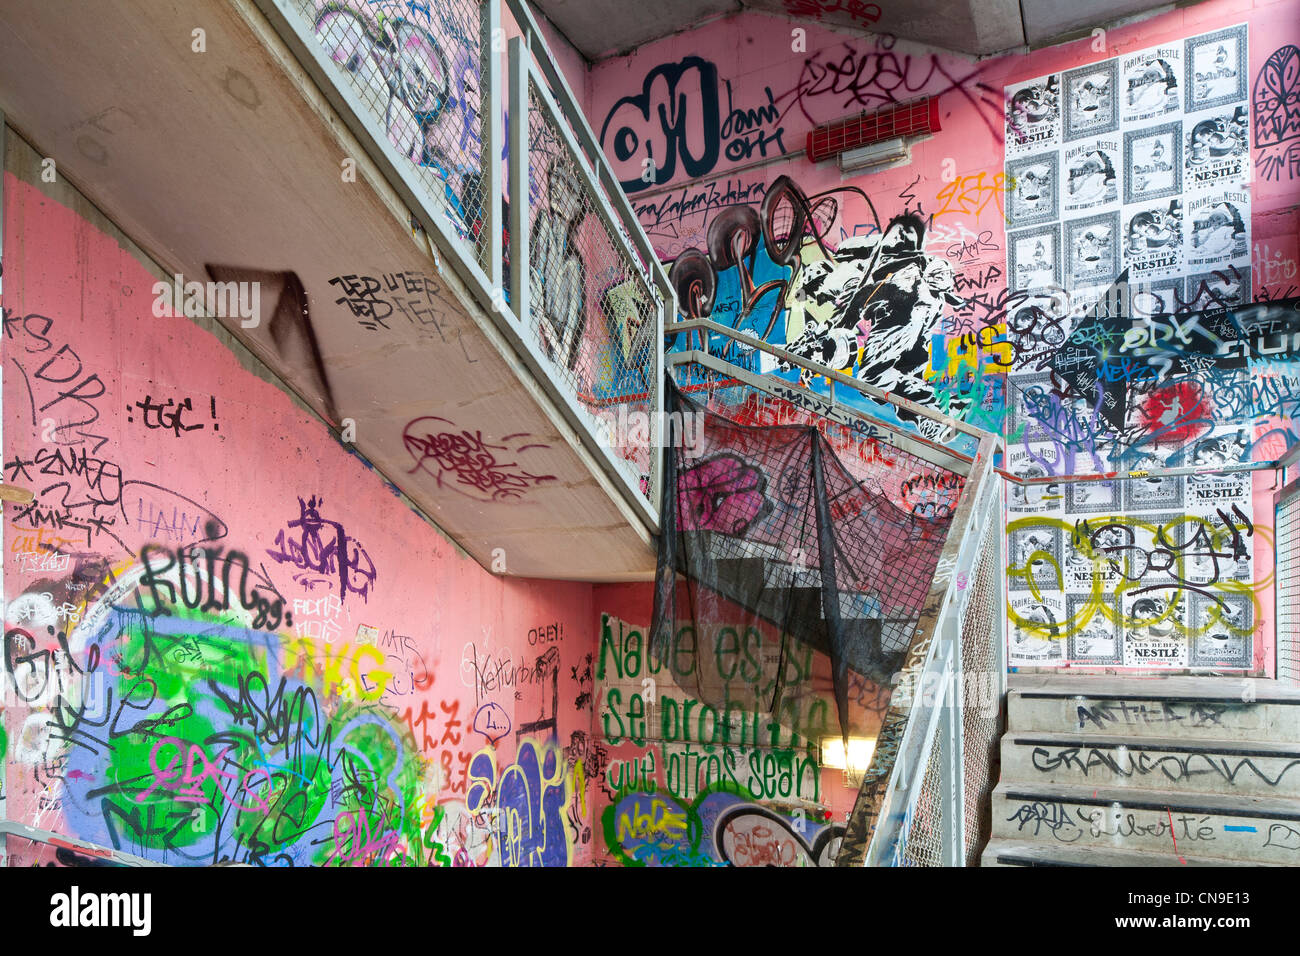 Germania, Berlino Mitte, Oranienburger Strasse, il Kunsthaus Tacheles, Tacheles, un artista squatting poiché gli anni novanta, situato in una Foto Stock